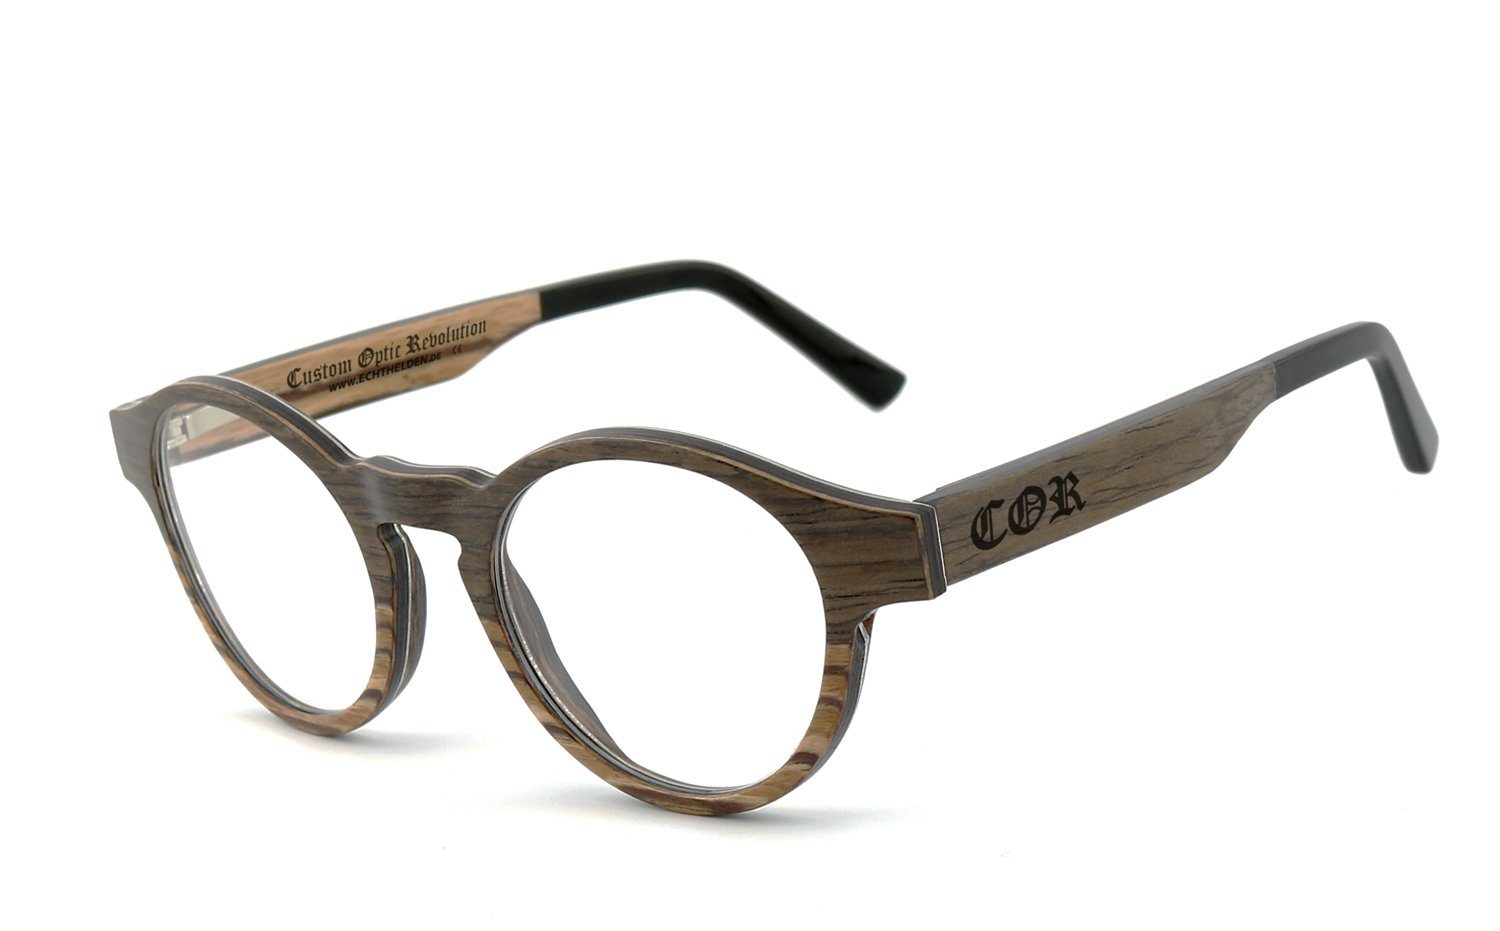 Brille Flex-Scharnieren Bügel mit COR009 COR Holzbrille,